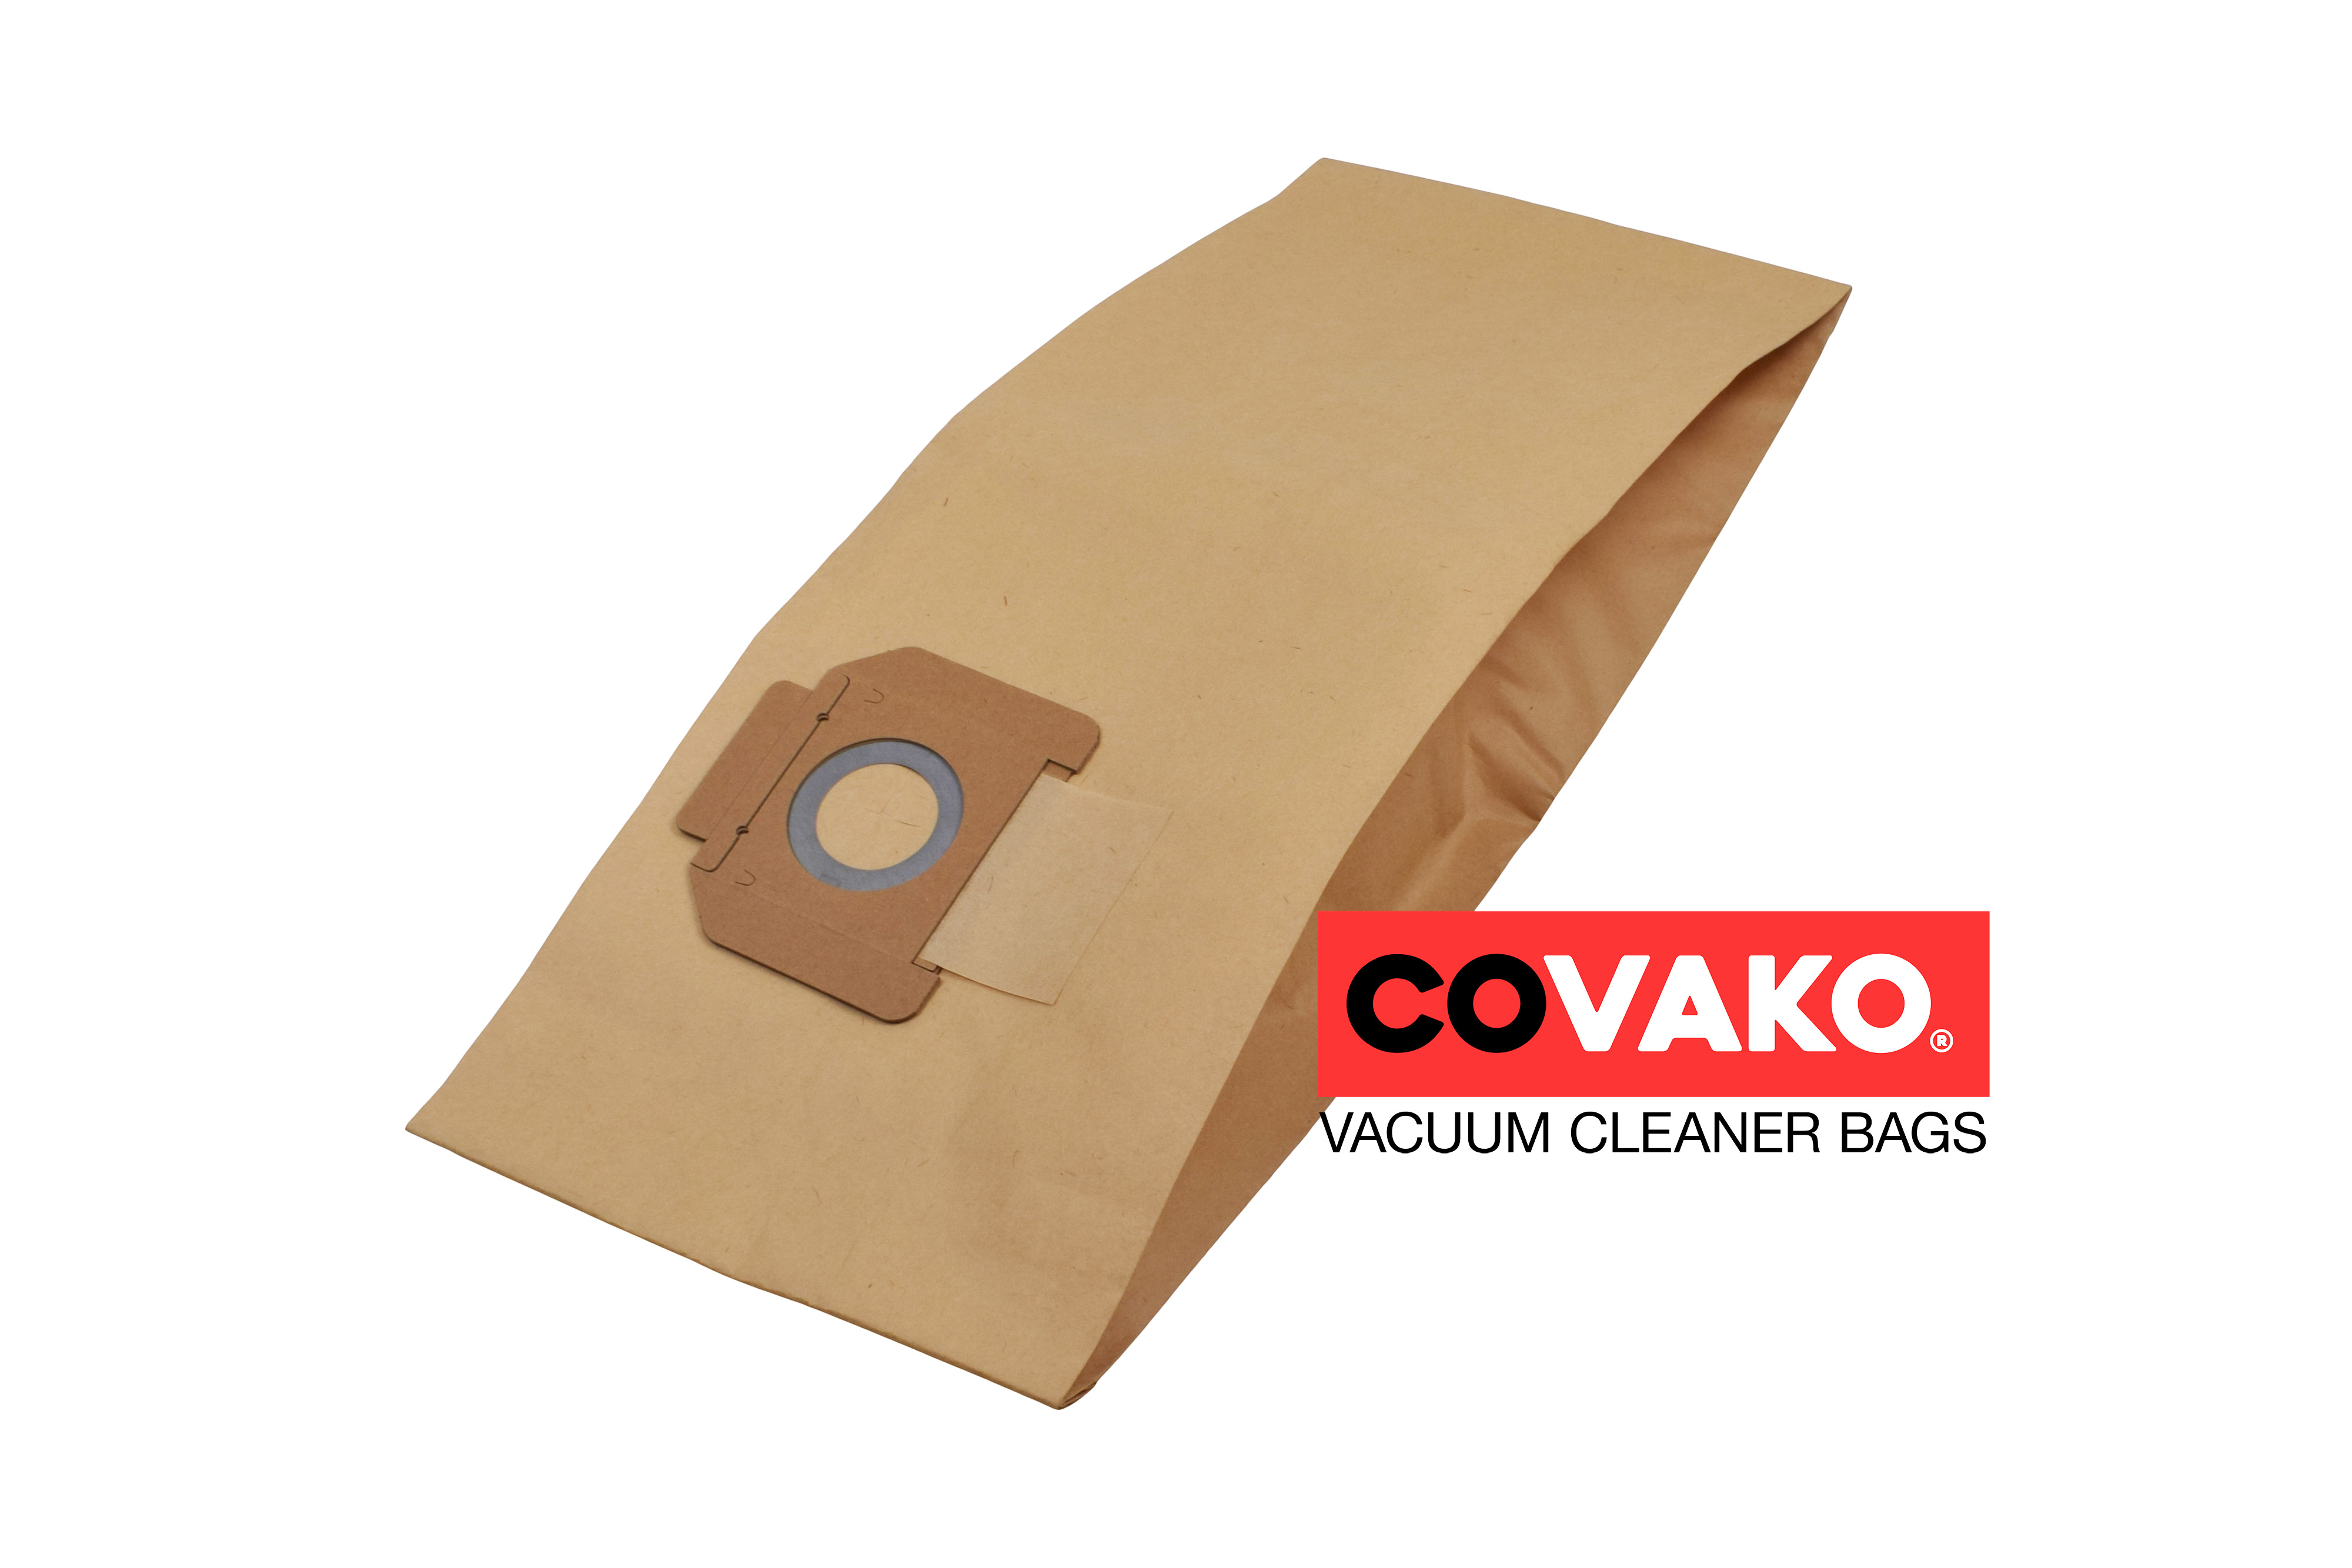 Alto IVB 30 / Papier - Alto sacs d’aspirateur